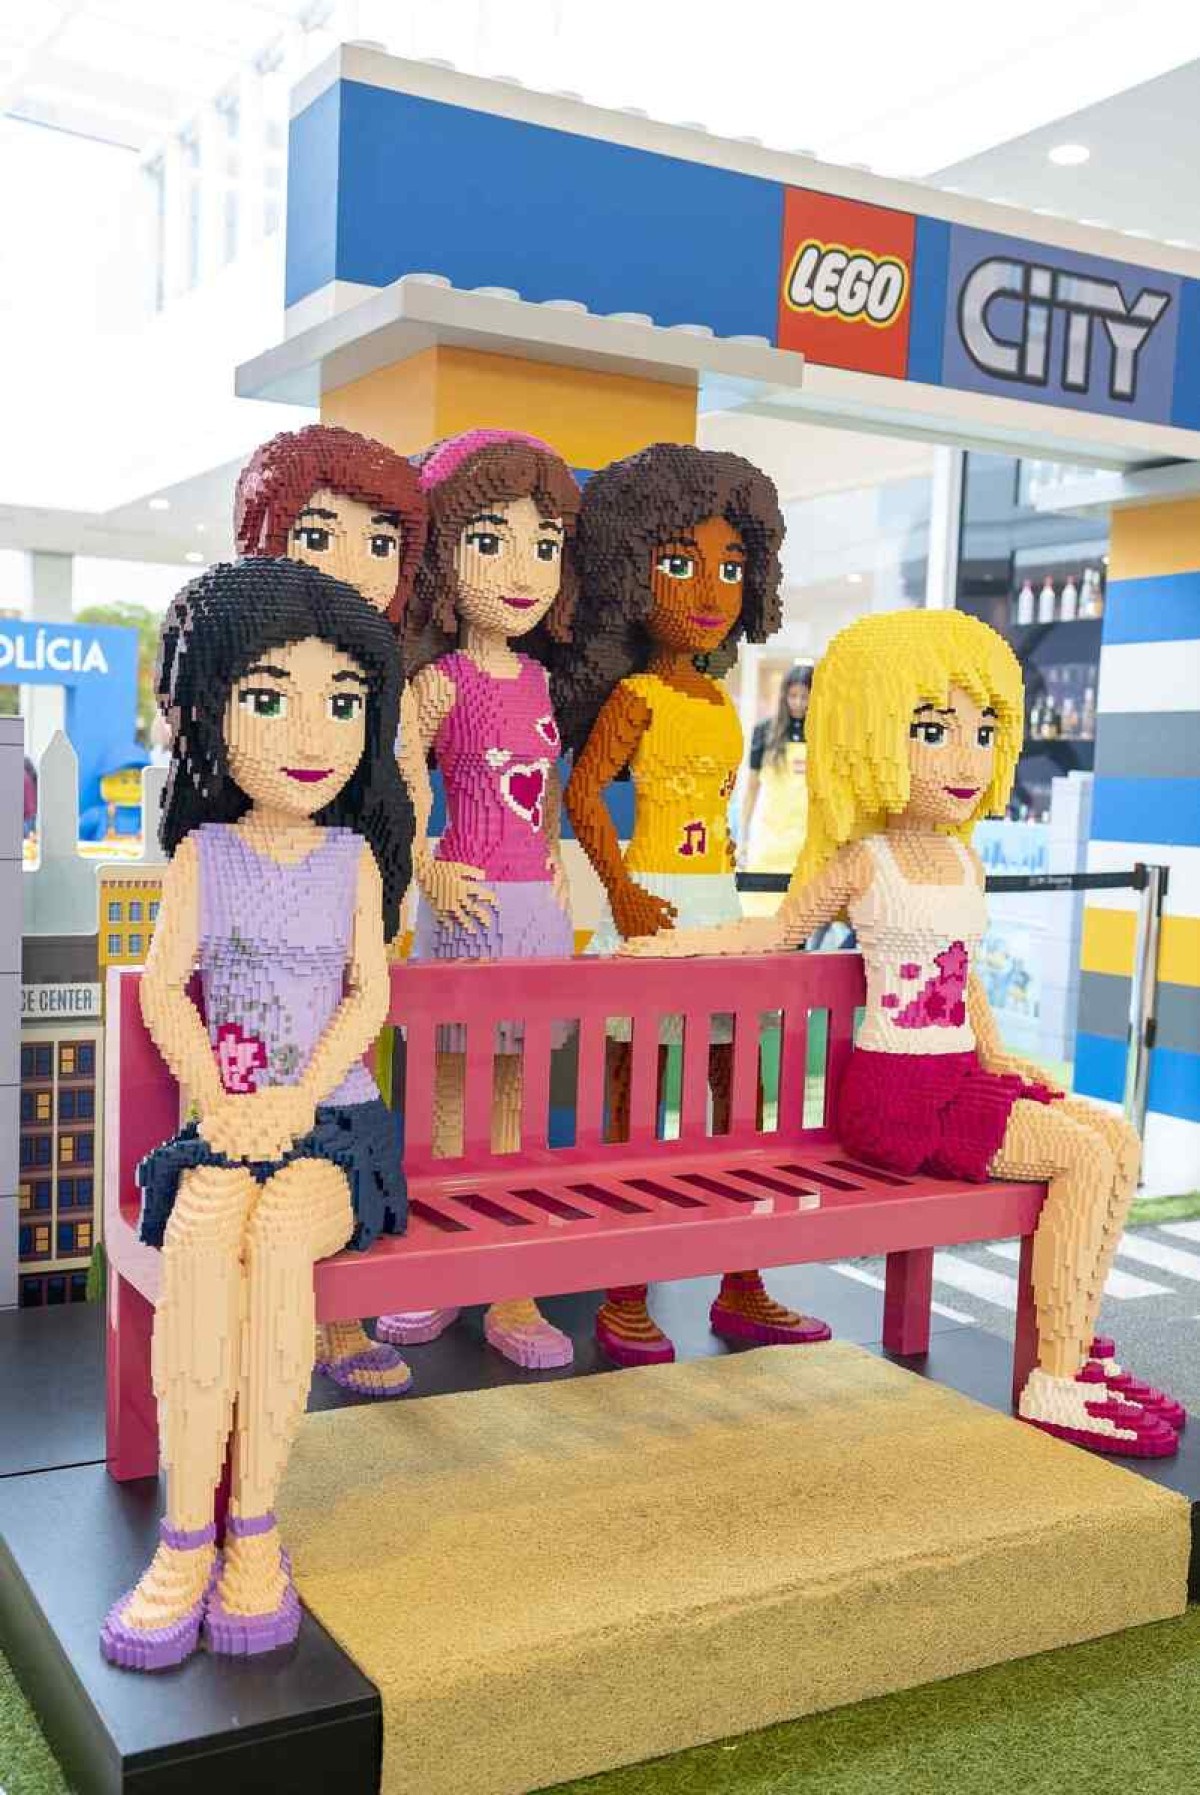 Lego City chega ao Park Shopping como opção para as férias das crianças